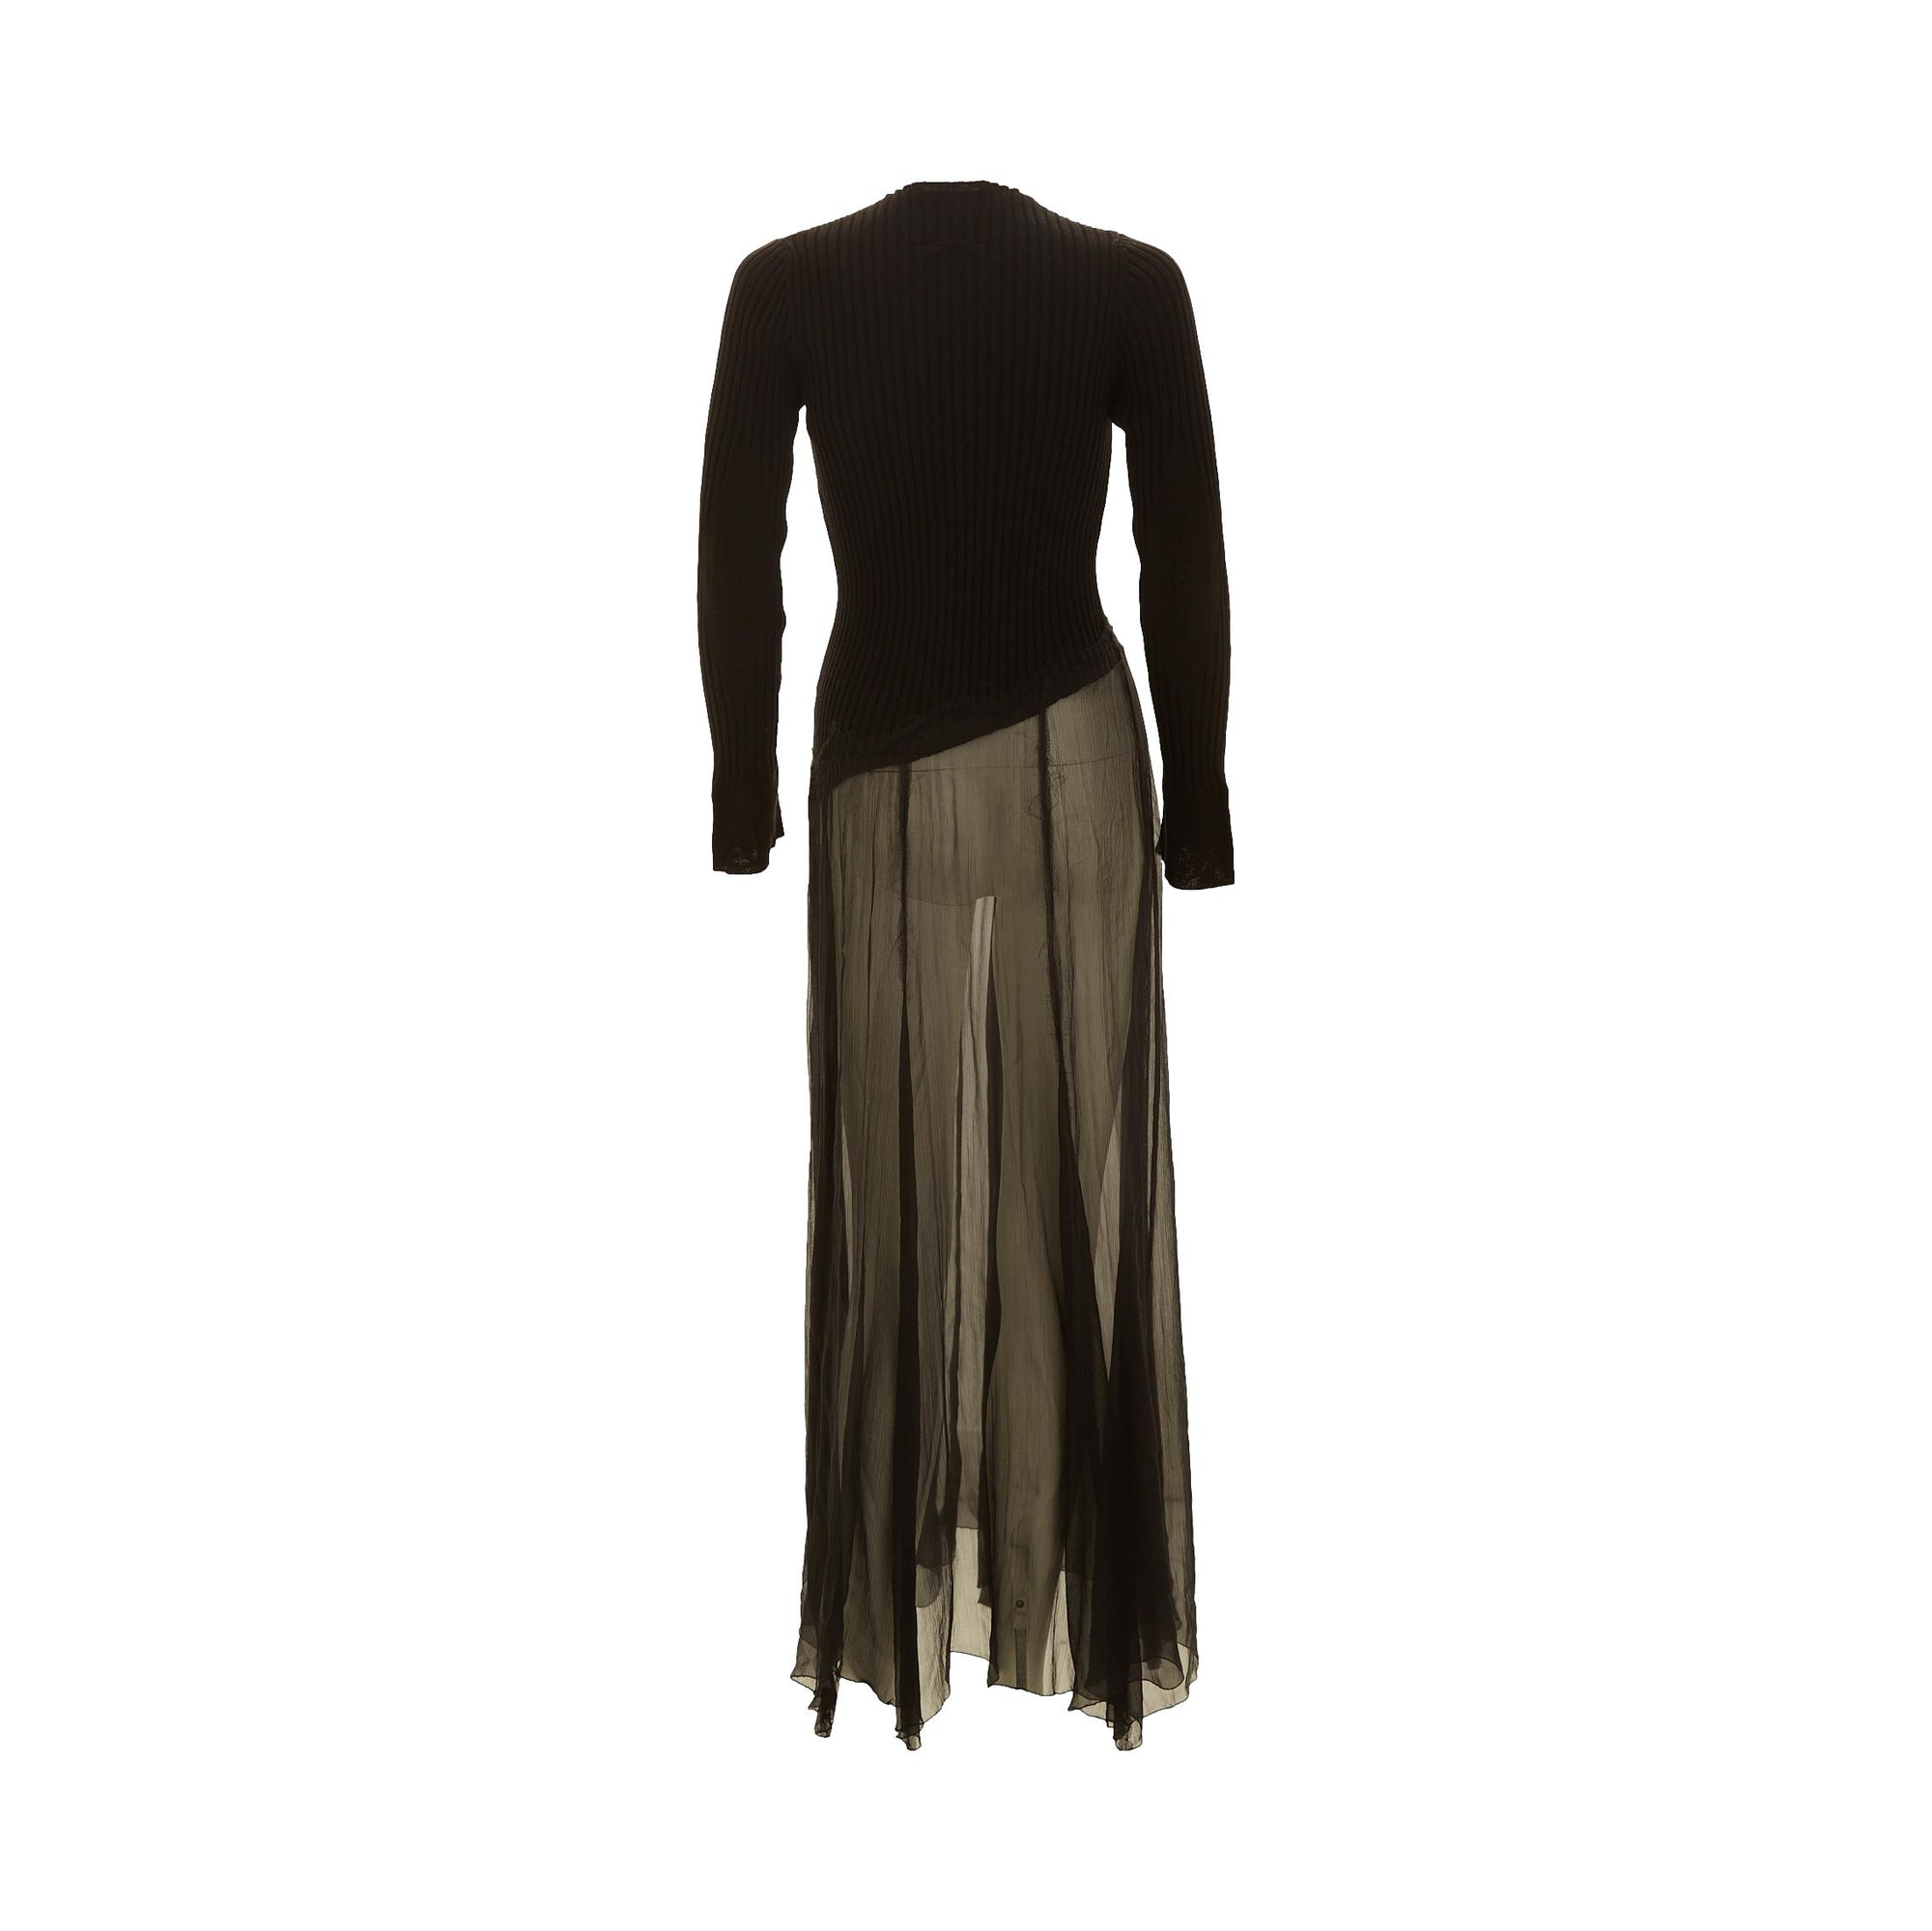 Jean Paul Gaultier Black Long Sleeve Dress